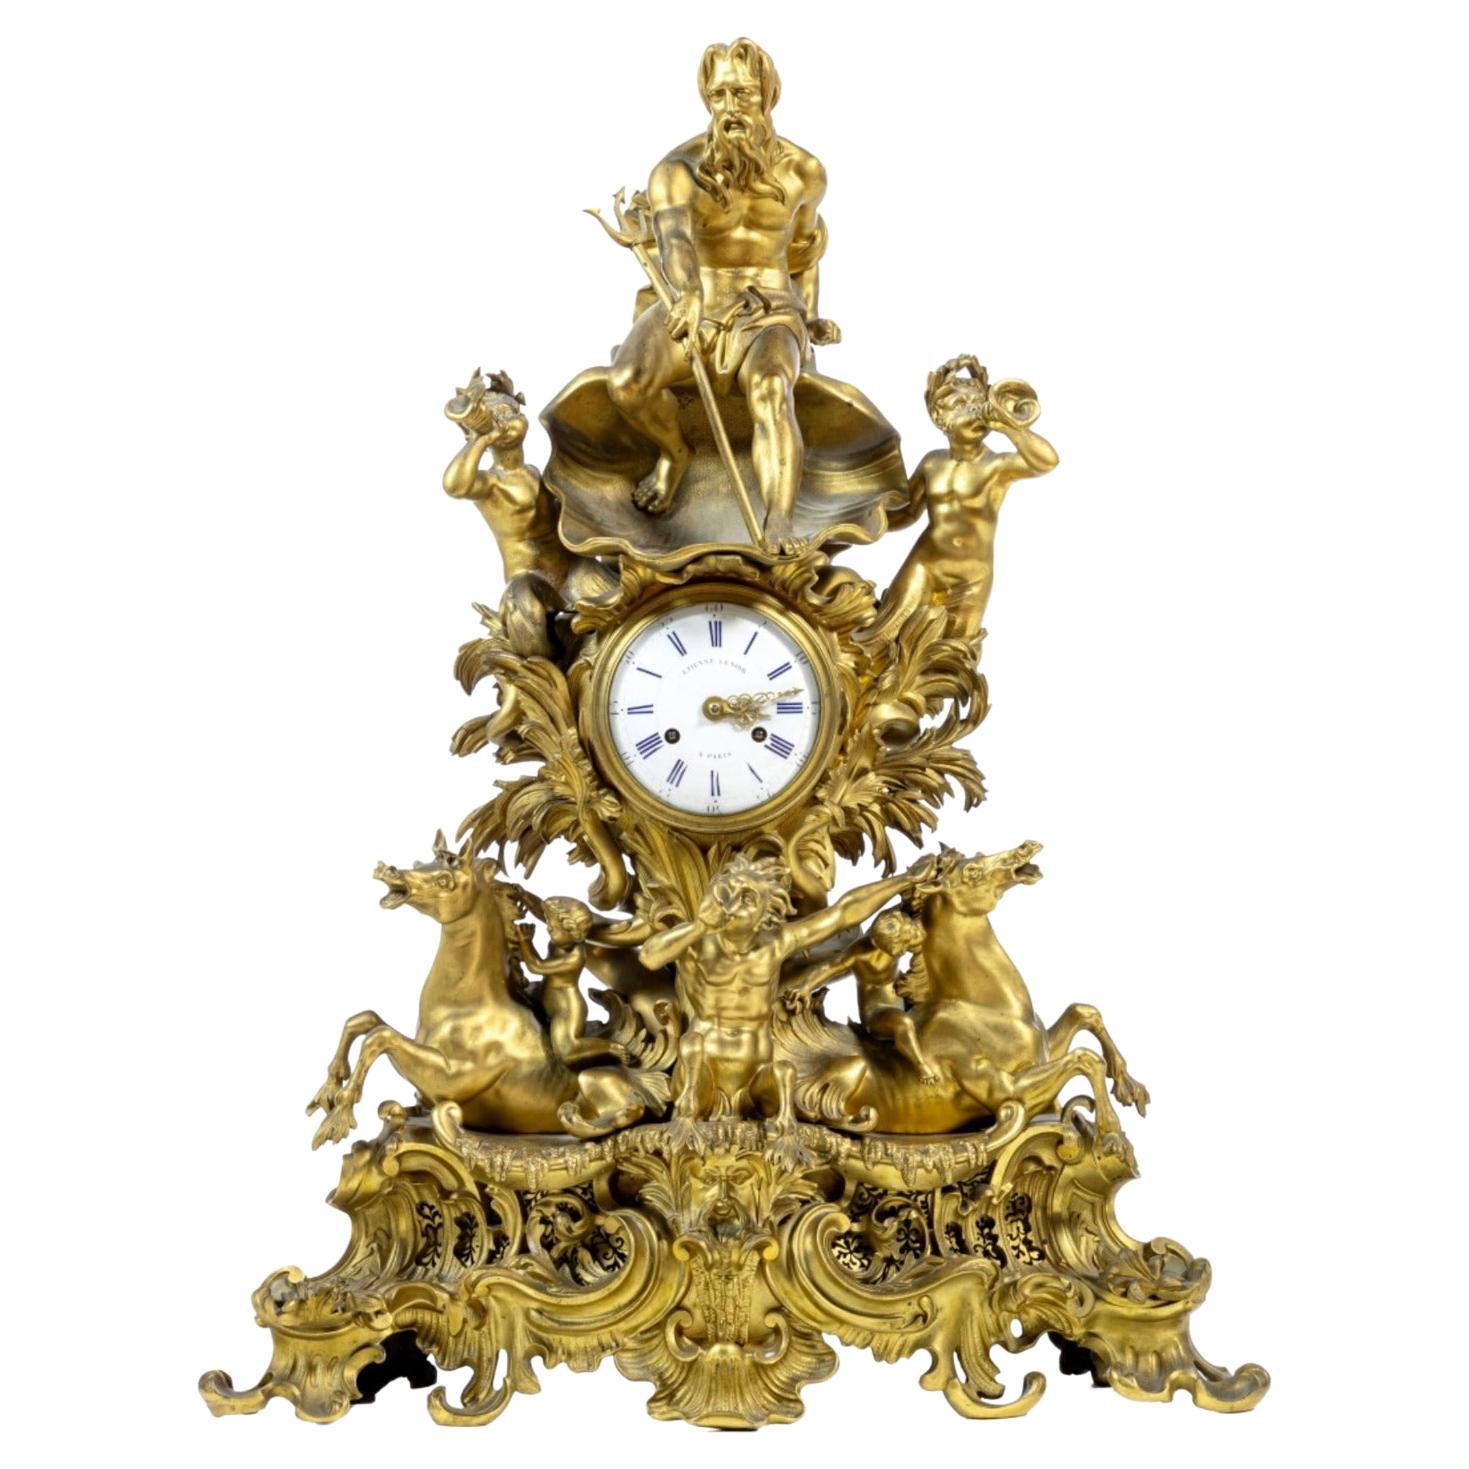 Important Etienne LeNoir Clock 18th Century